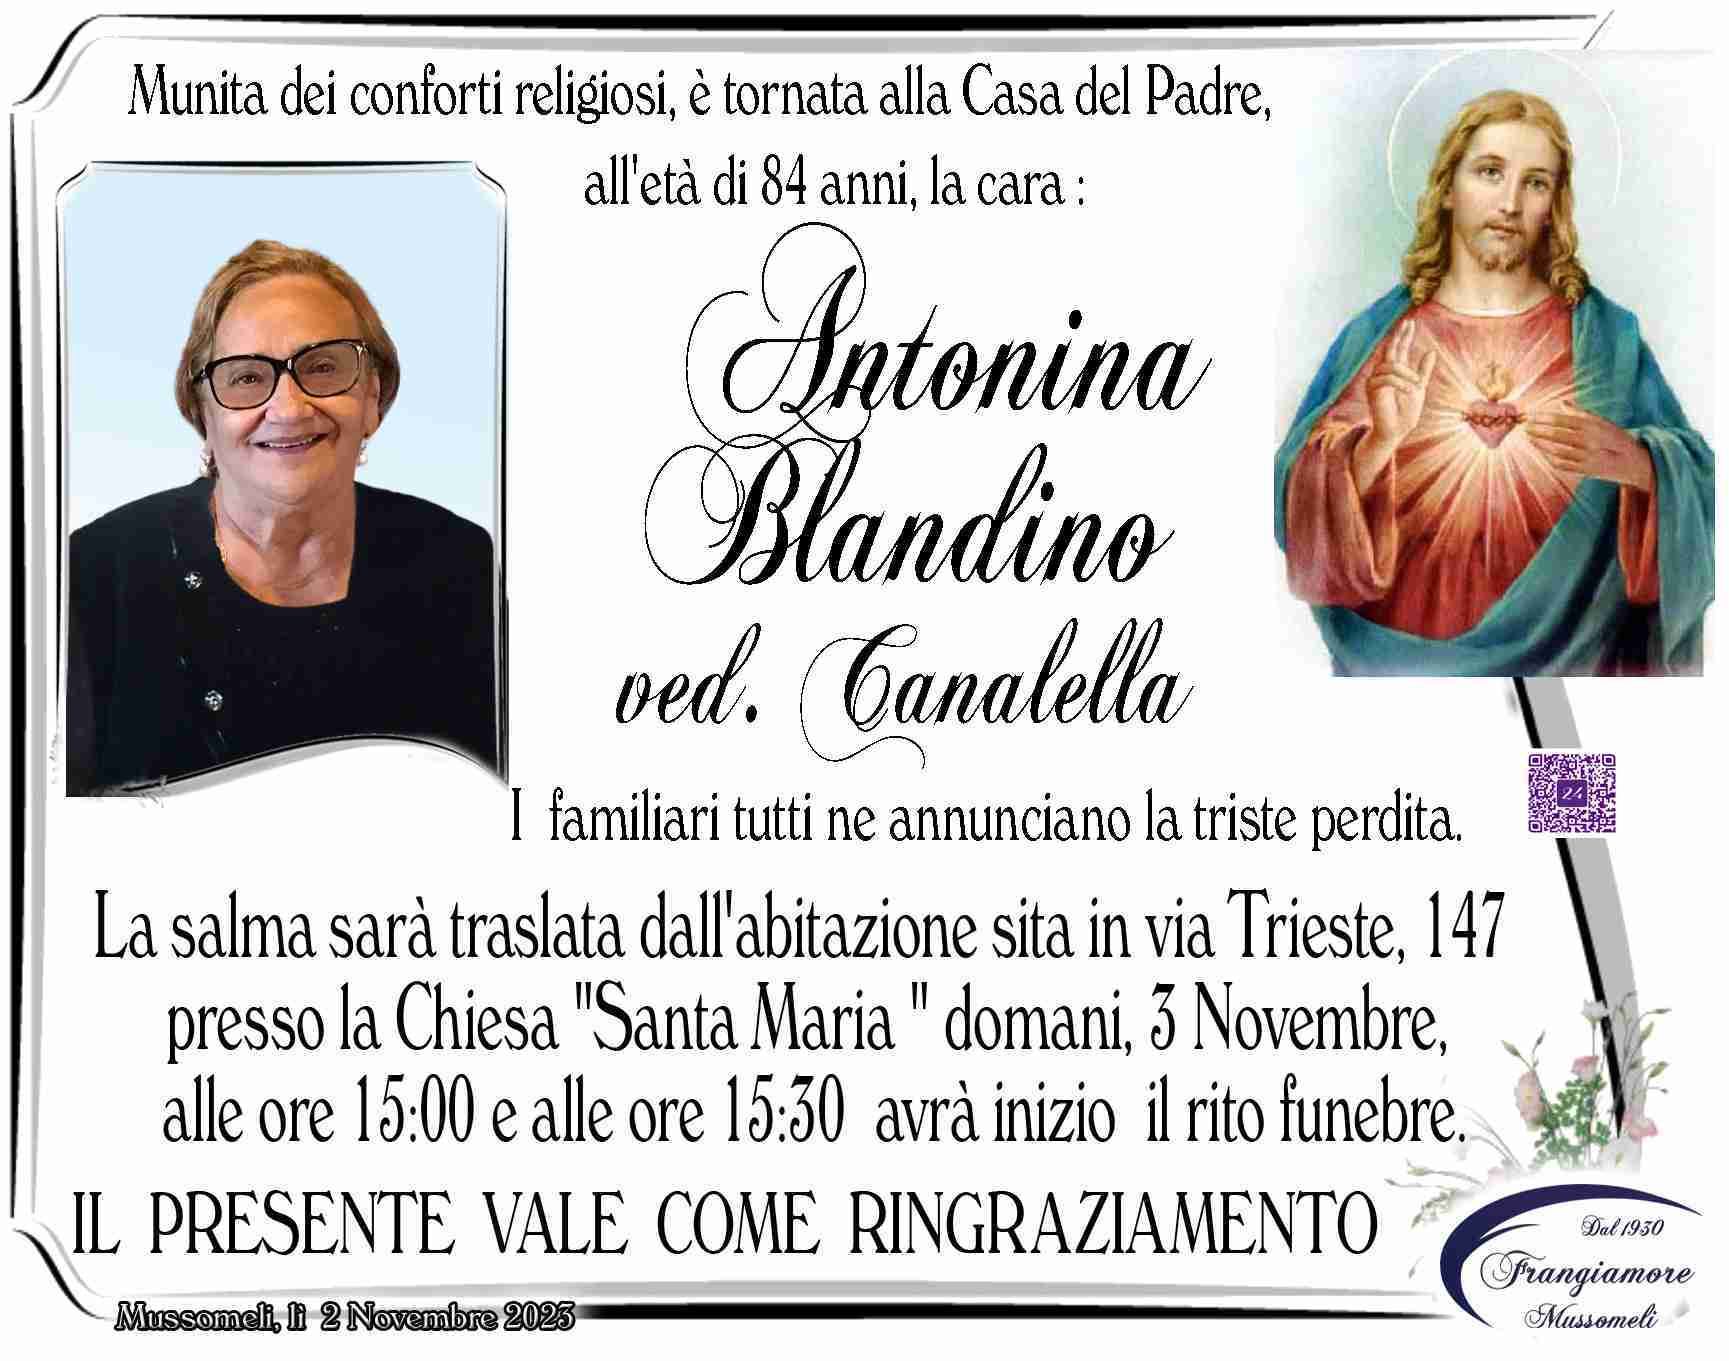 Antonina Blandino